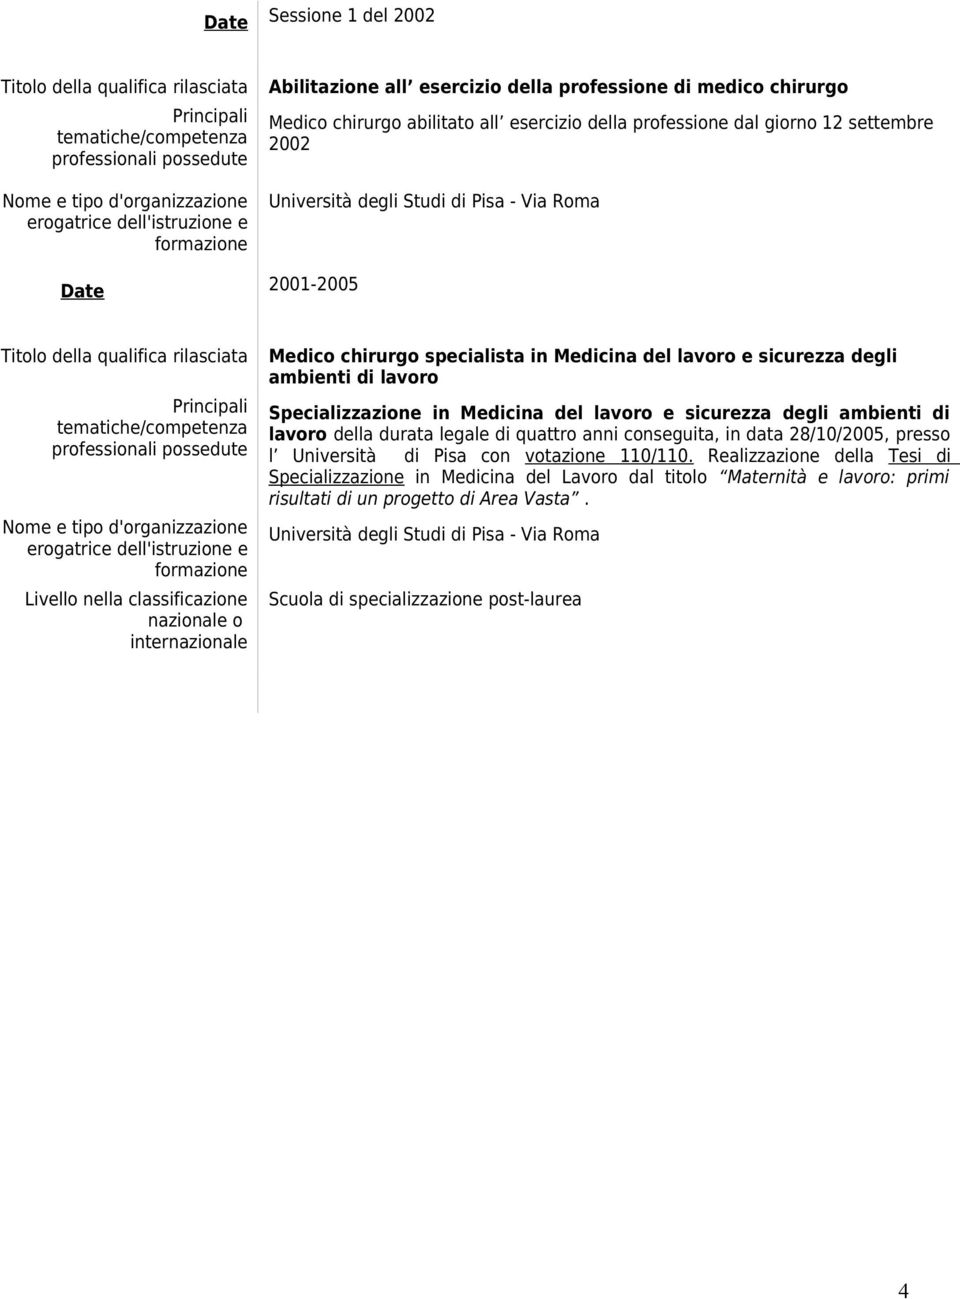 Specializzazione in Medicina del e sicurezza degli ambienti di della durata legale di quattro anni conseguita, in data 28/10/2005, presso l Università di Pisa con votazione 110/110.